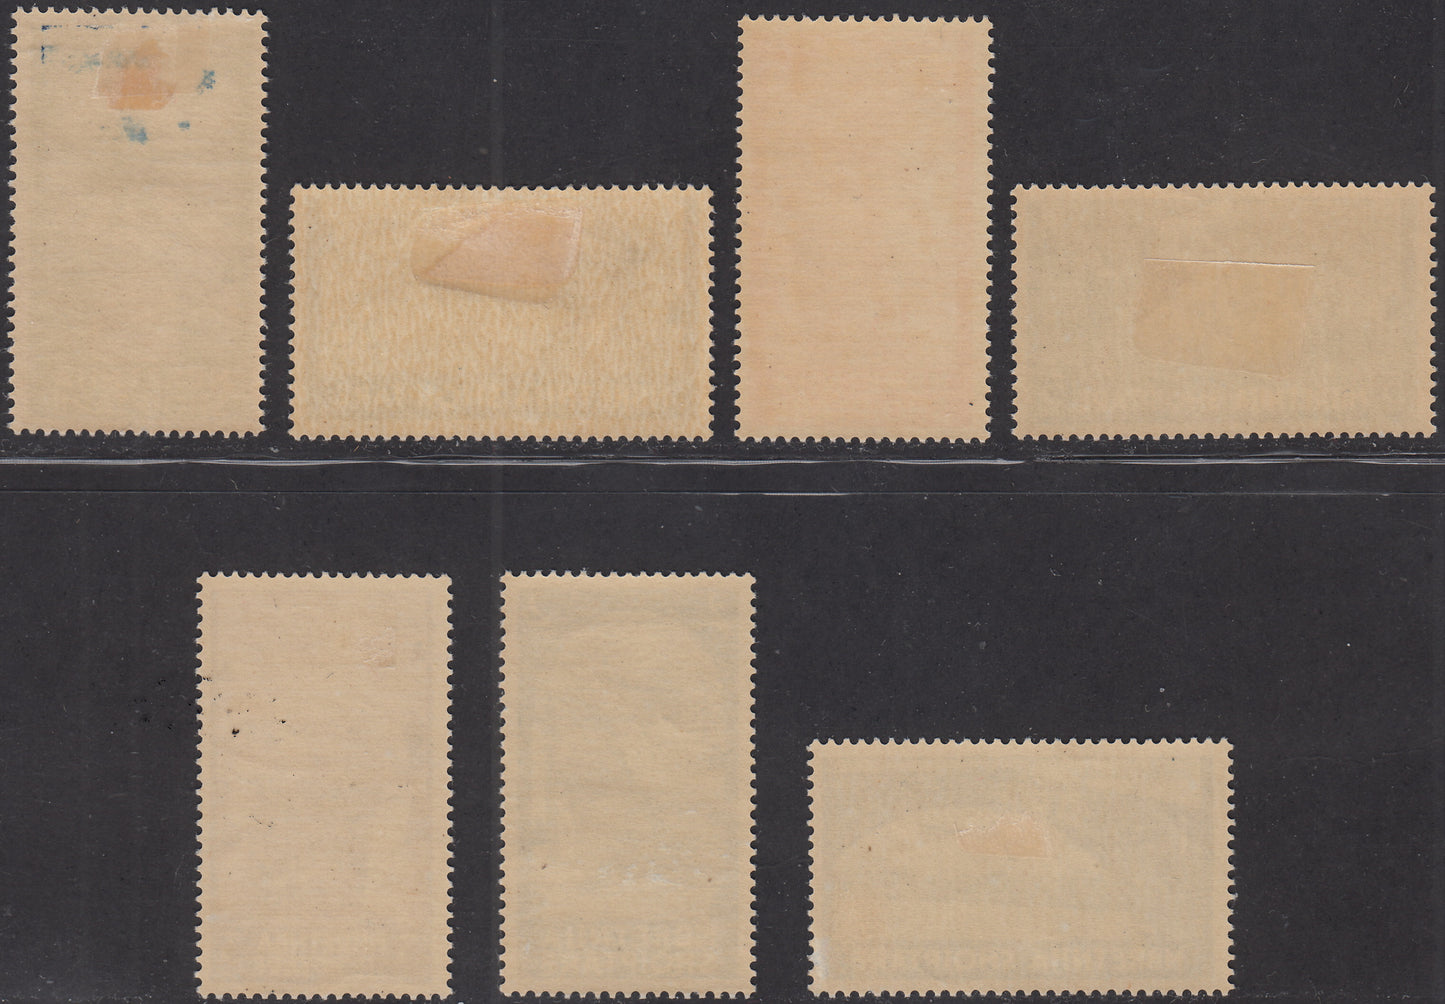 1940 -  Posta Aerea, serie ordinaria, soggetti e formati vari serie completa di 7 valori nuova con gomma originale (5/11).